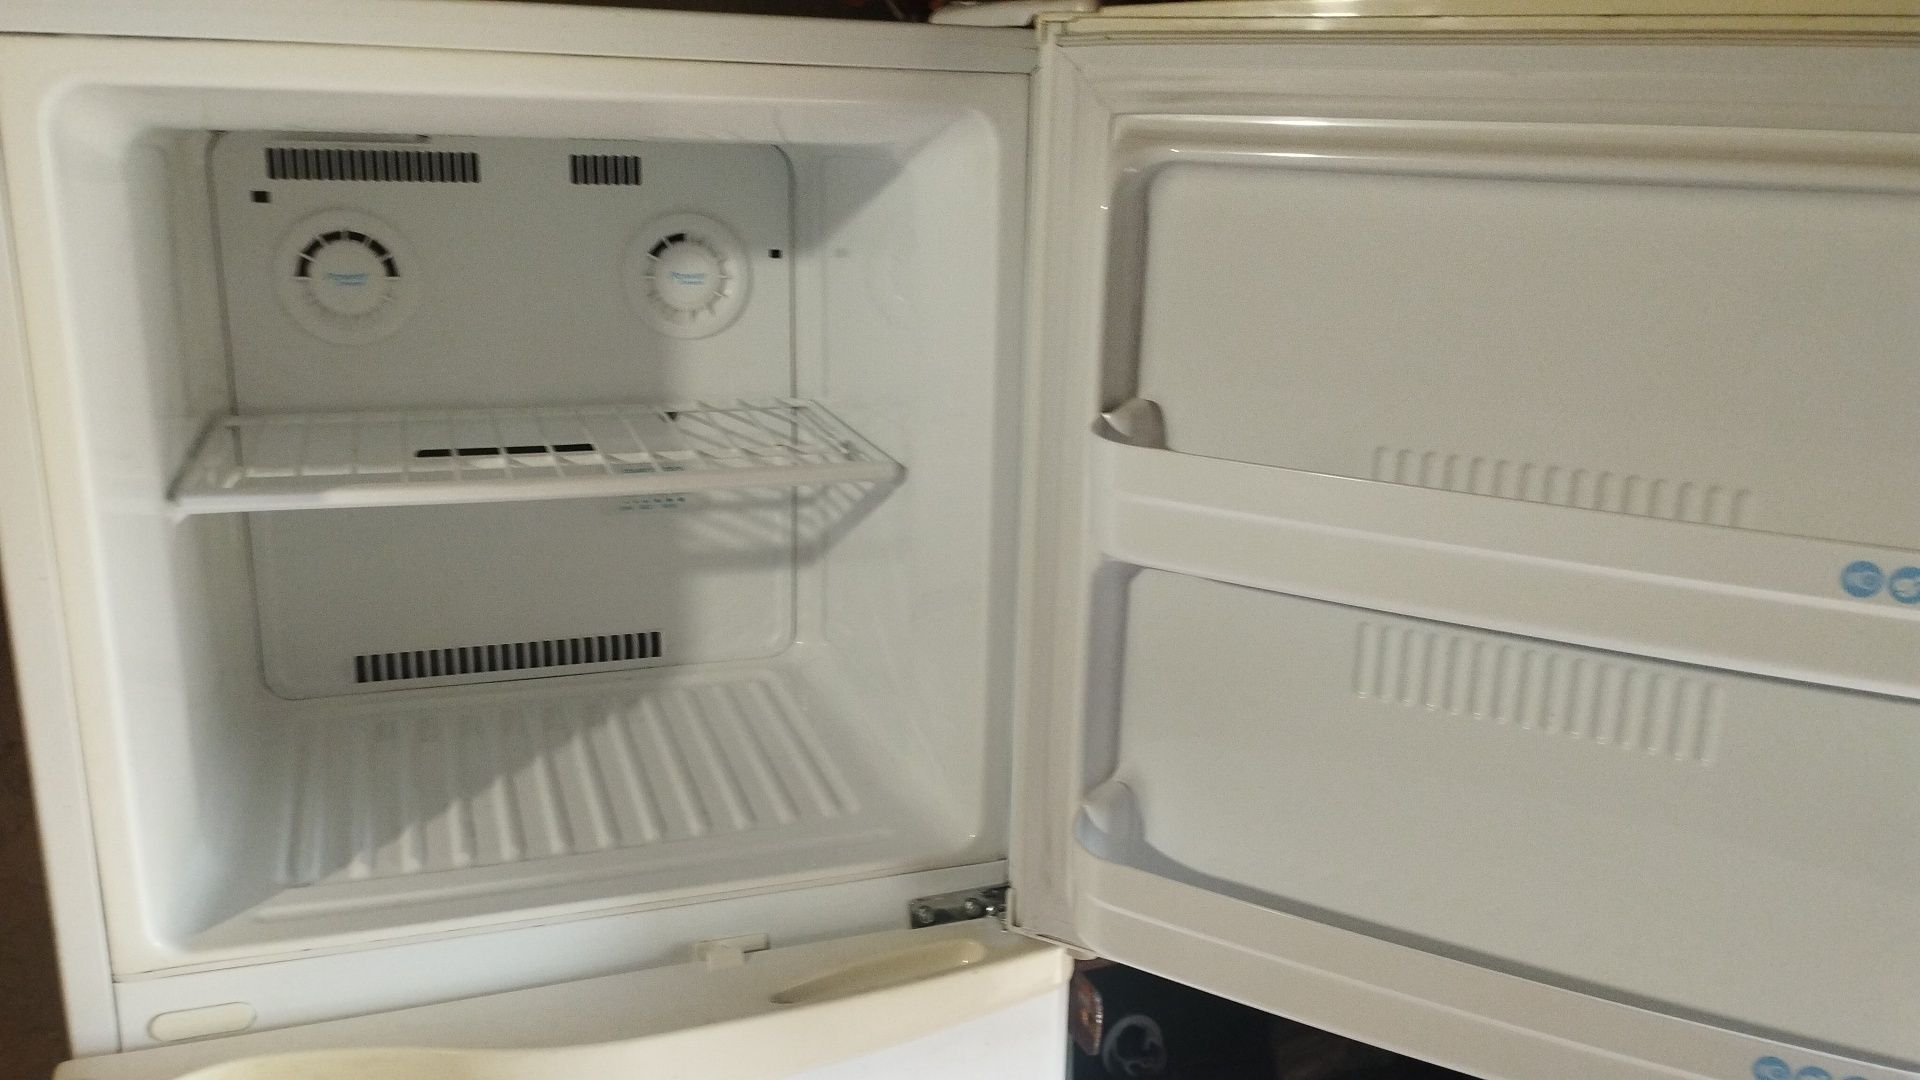 Продам холодильник в хорошем состоянии LG